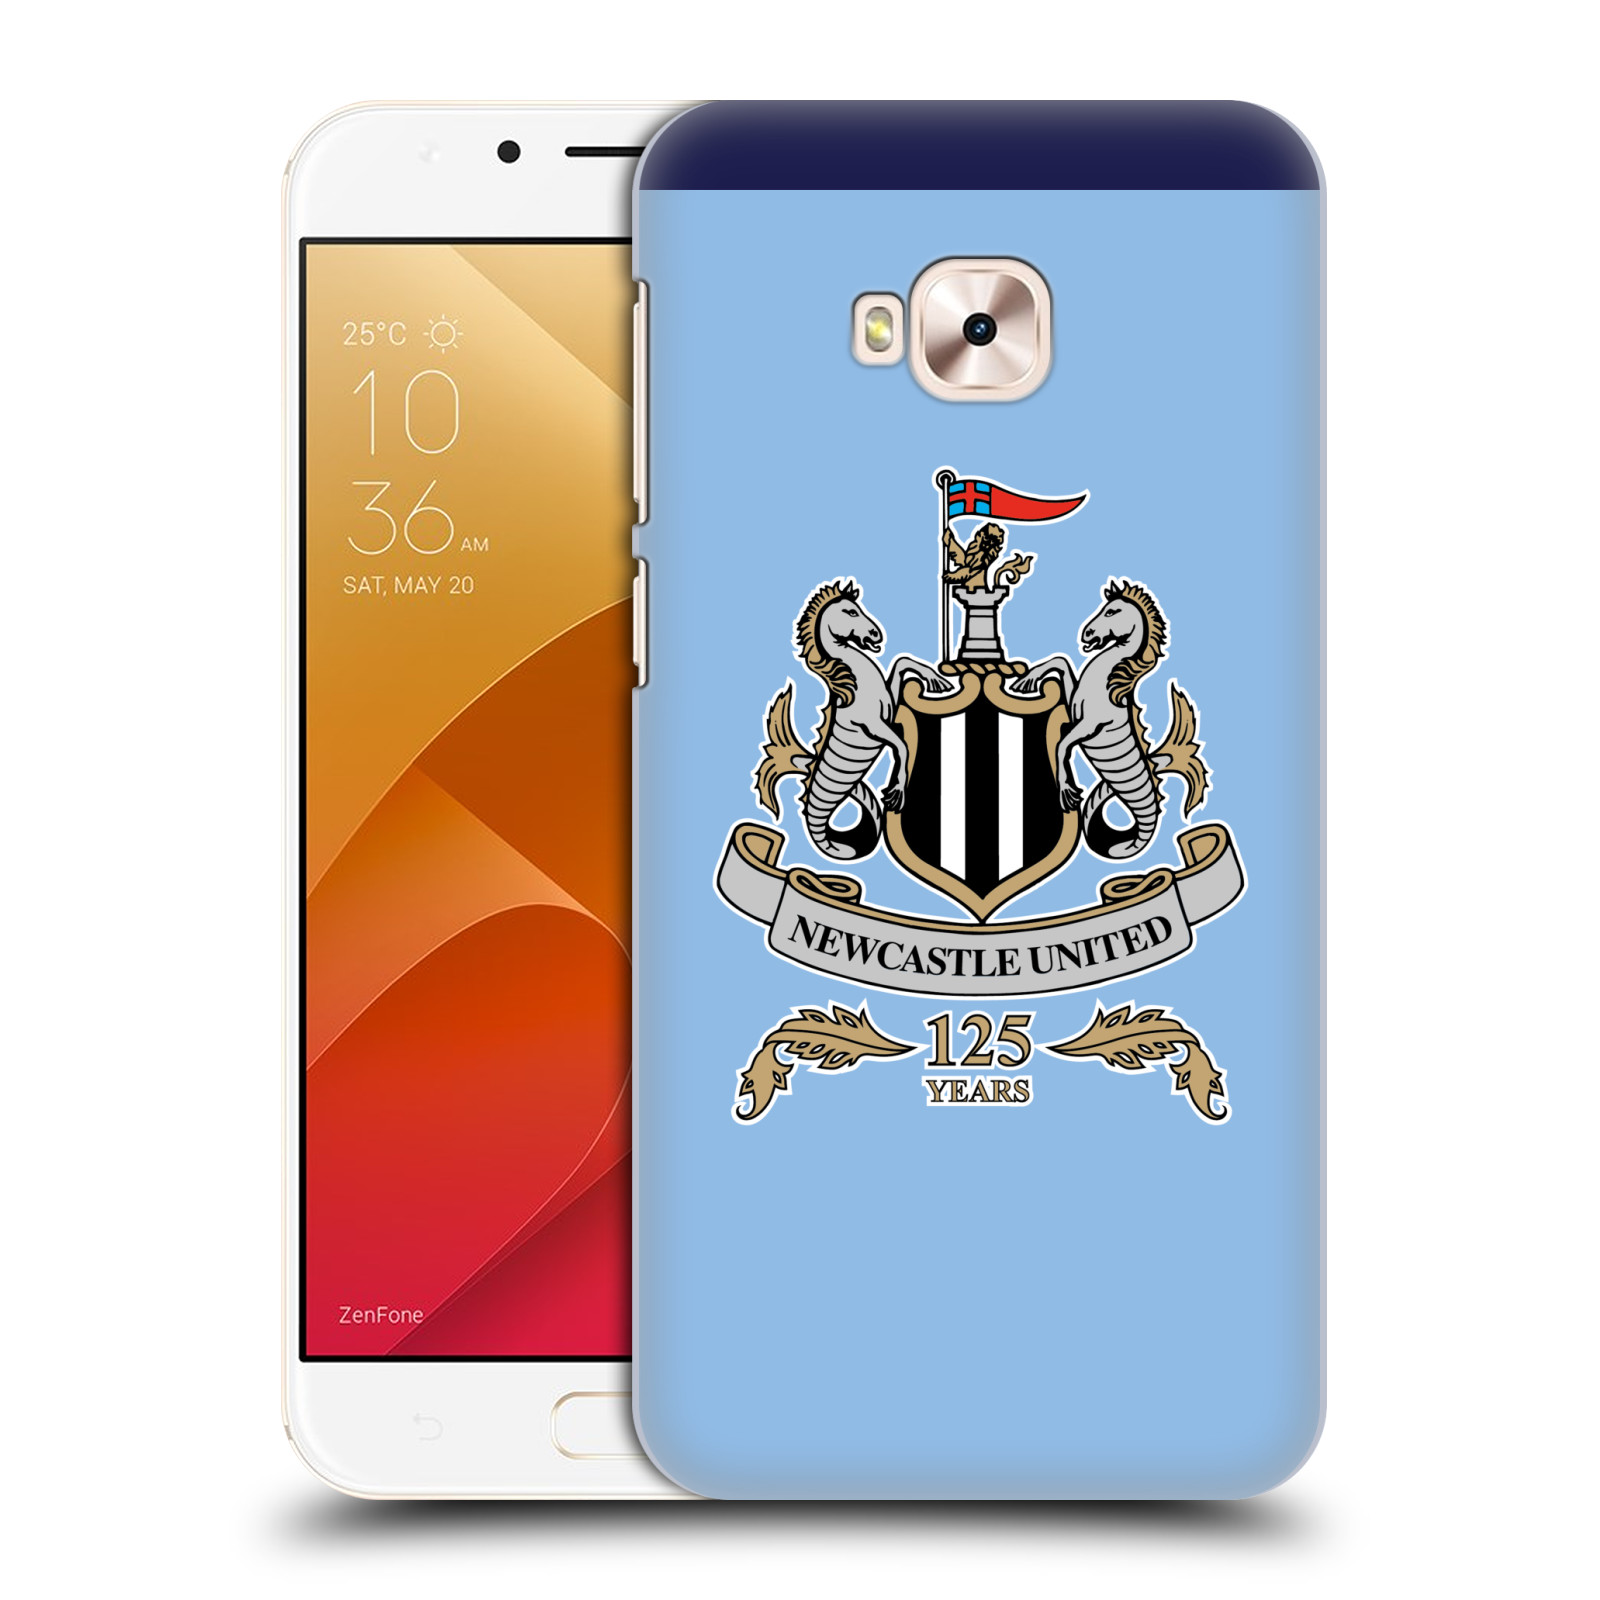 HEAD CASE plastový obal na mobil Asus Zenfone 4 Selfie Pro ZD552KL Fotbalový klub Newcastle United FC velký znak na modrém pozadí